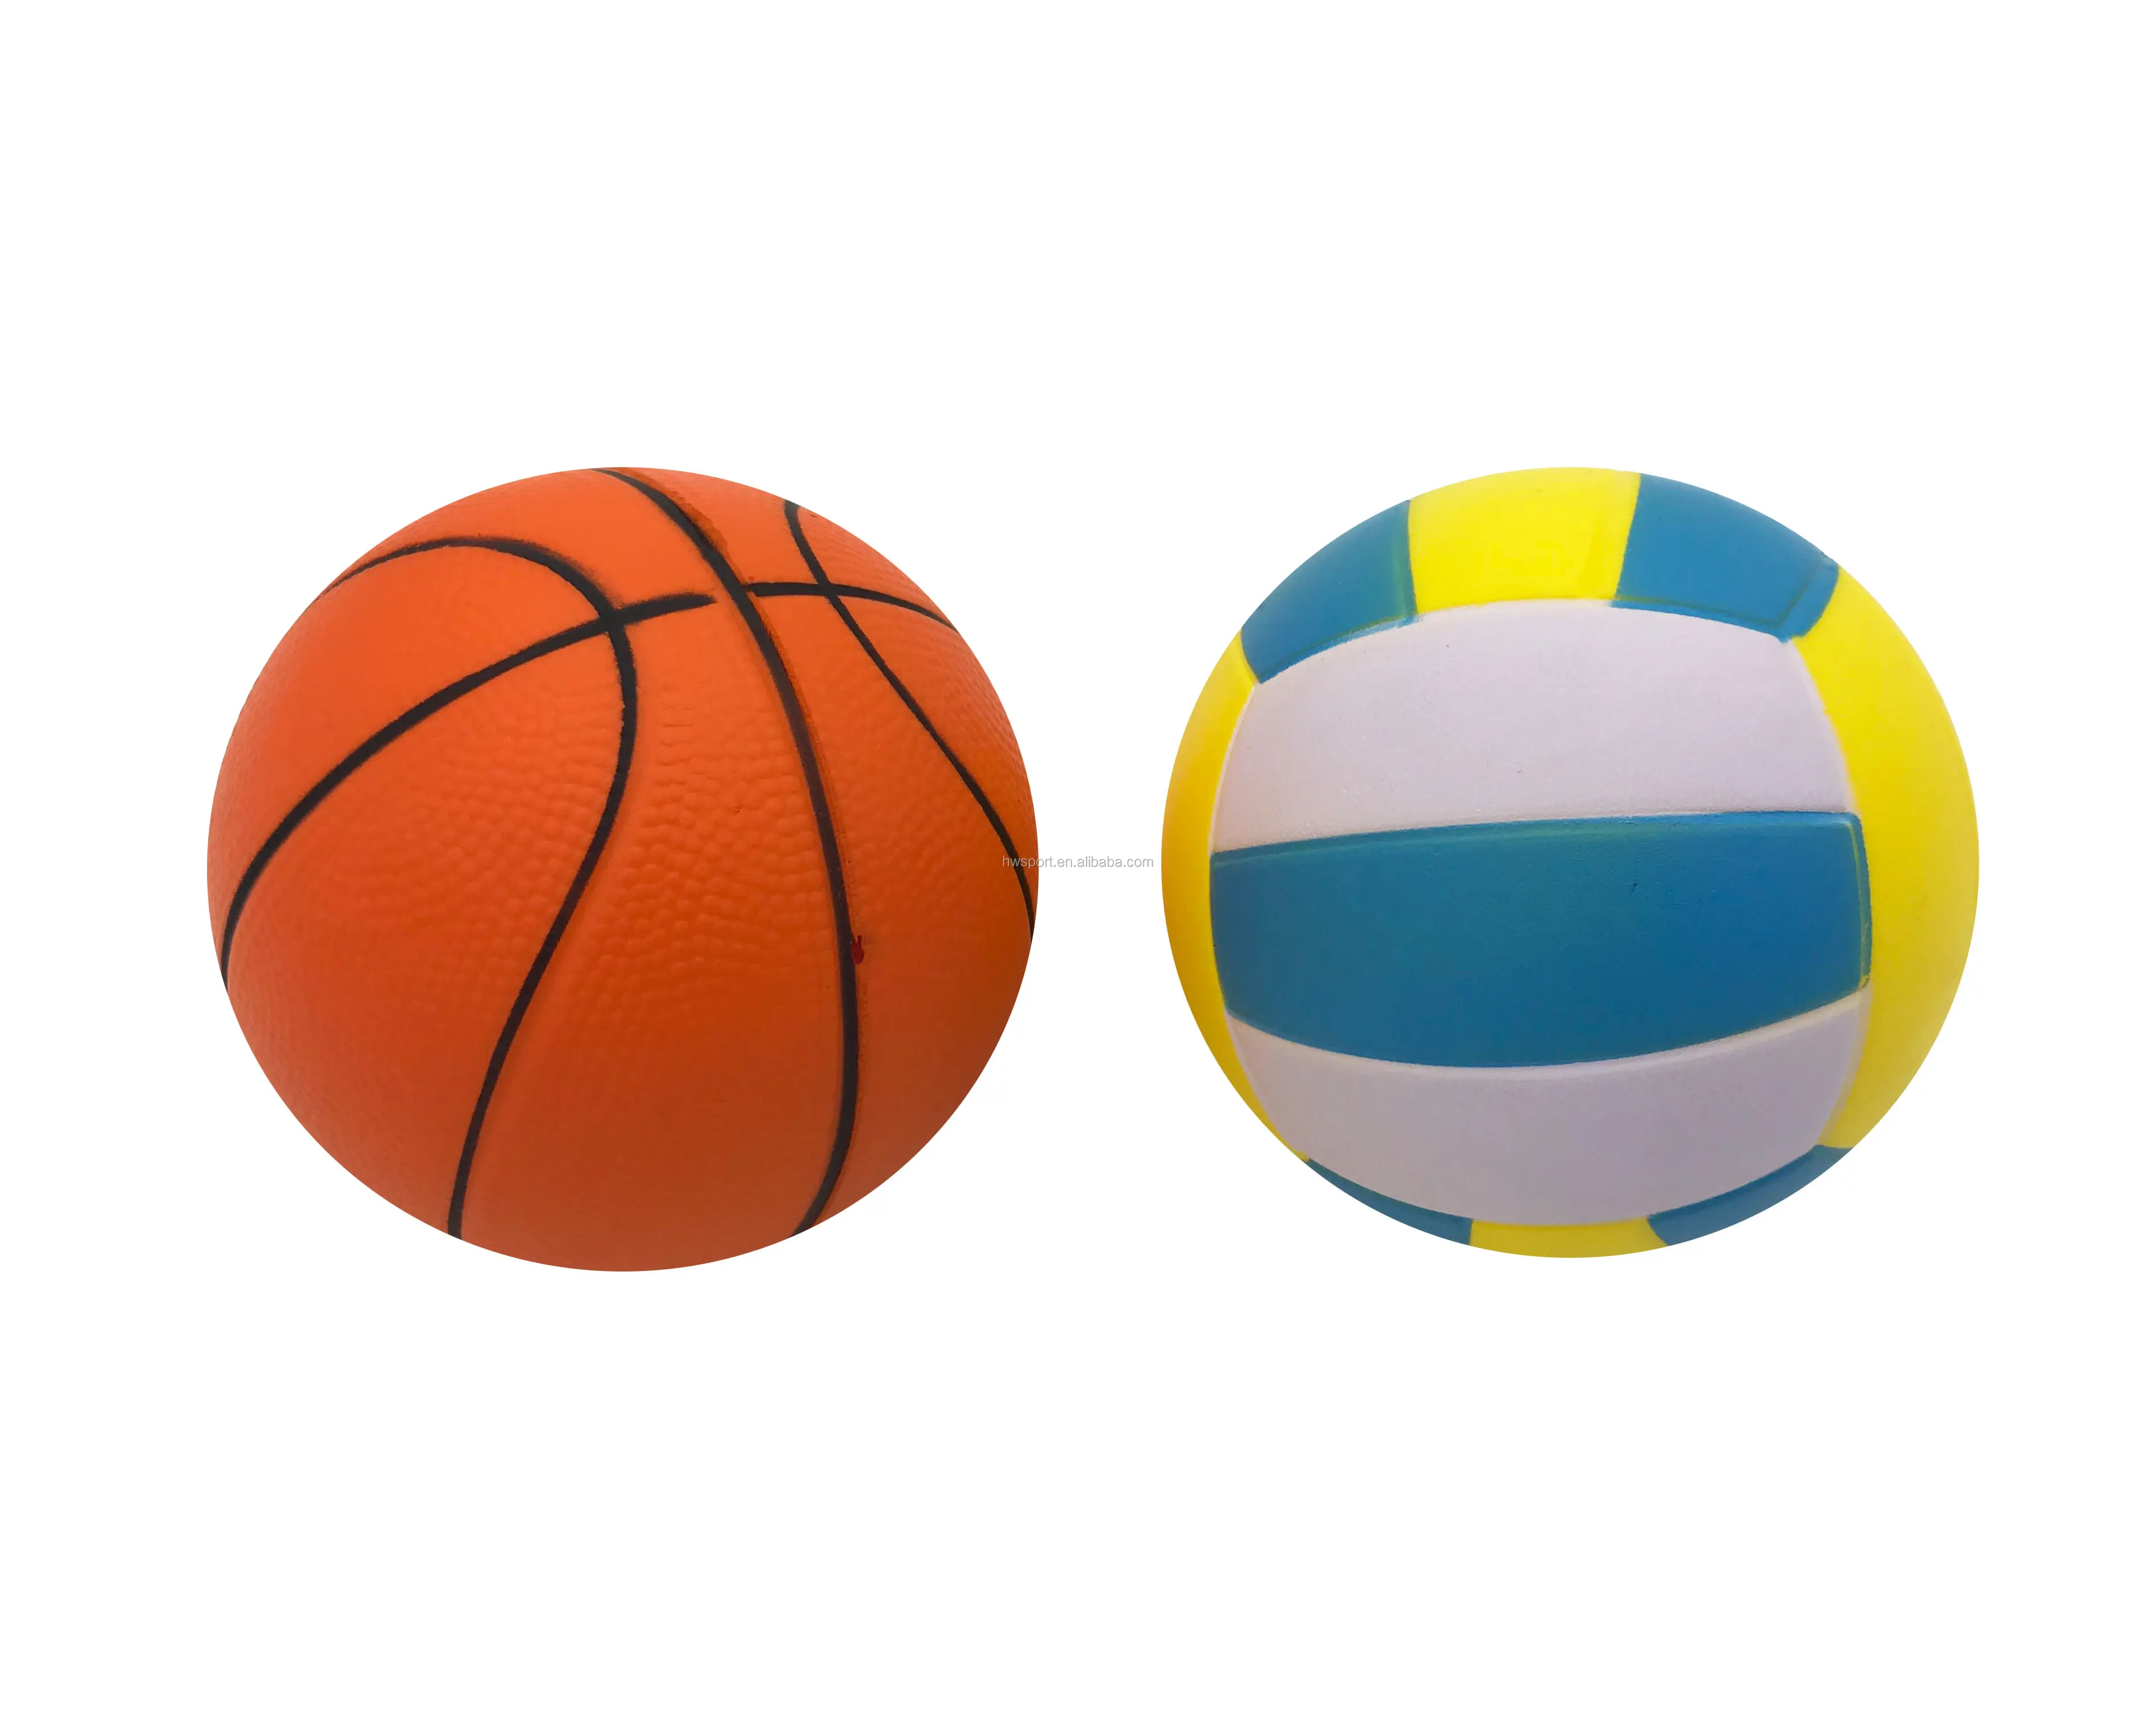 Promozionale di pallacanestro pallavolo pu foam stress palla super soft lento aumento sport palla giocattoli di distensione della tensione squishy giocattoli